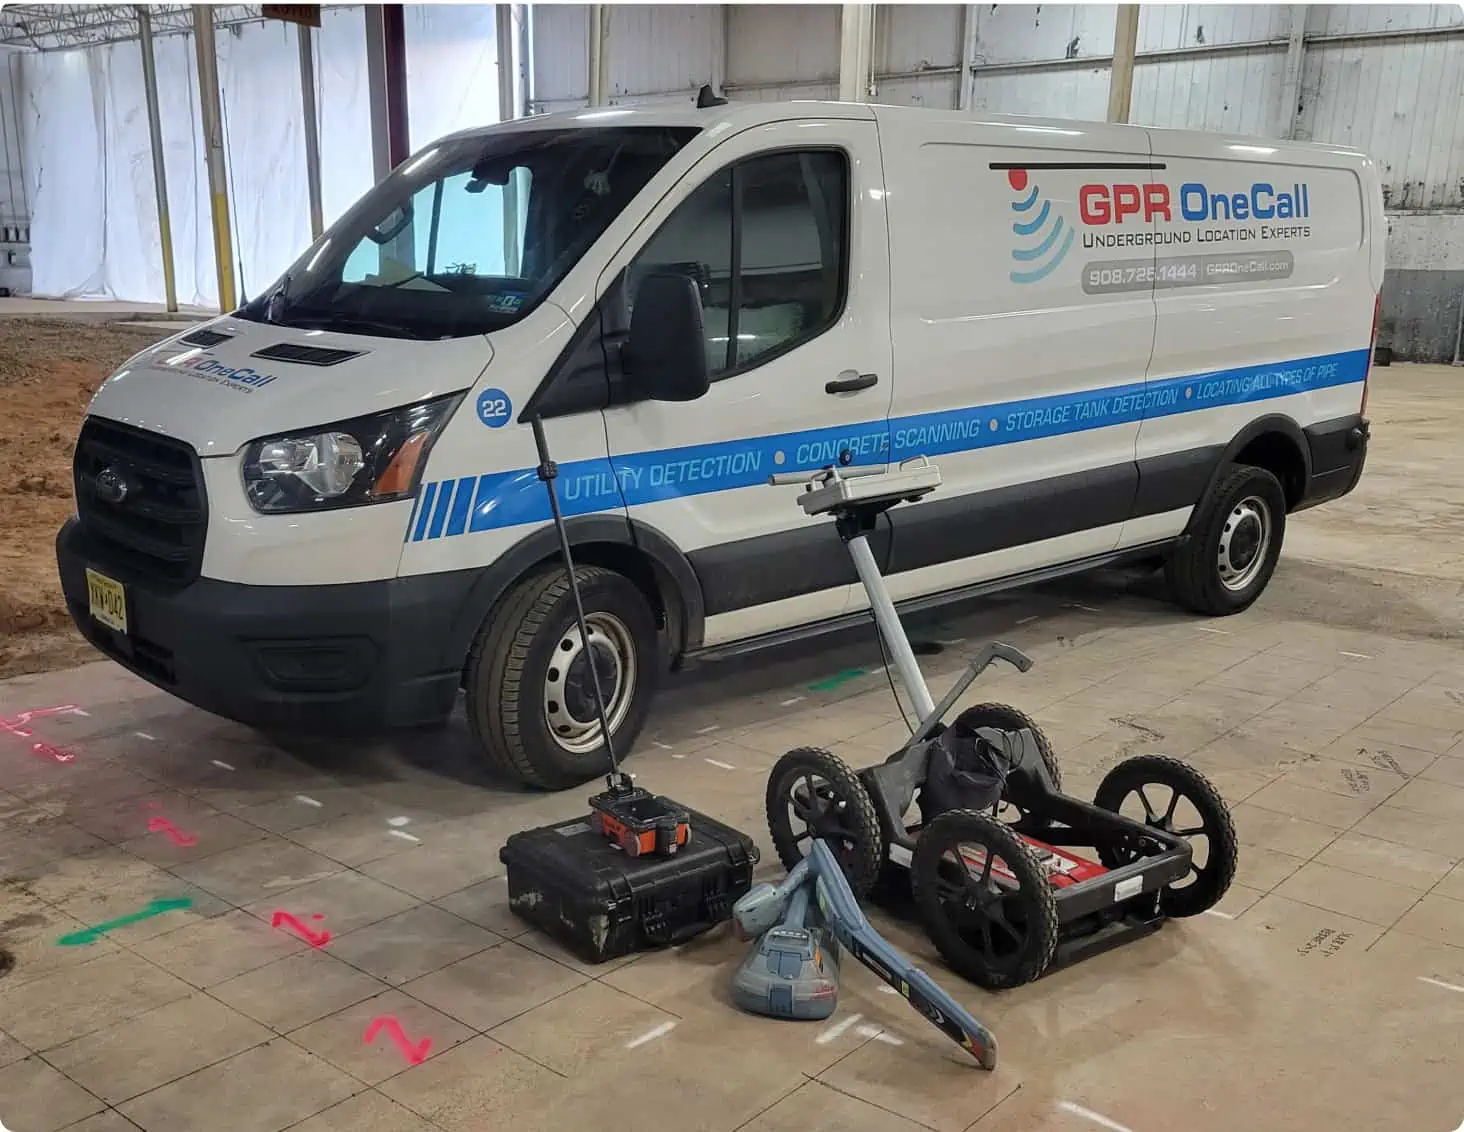 Ground Penetrating Radar Service Van and Equipment Indoors